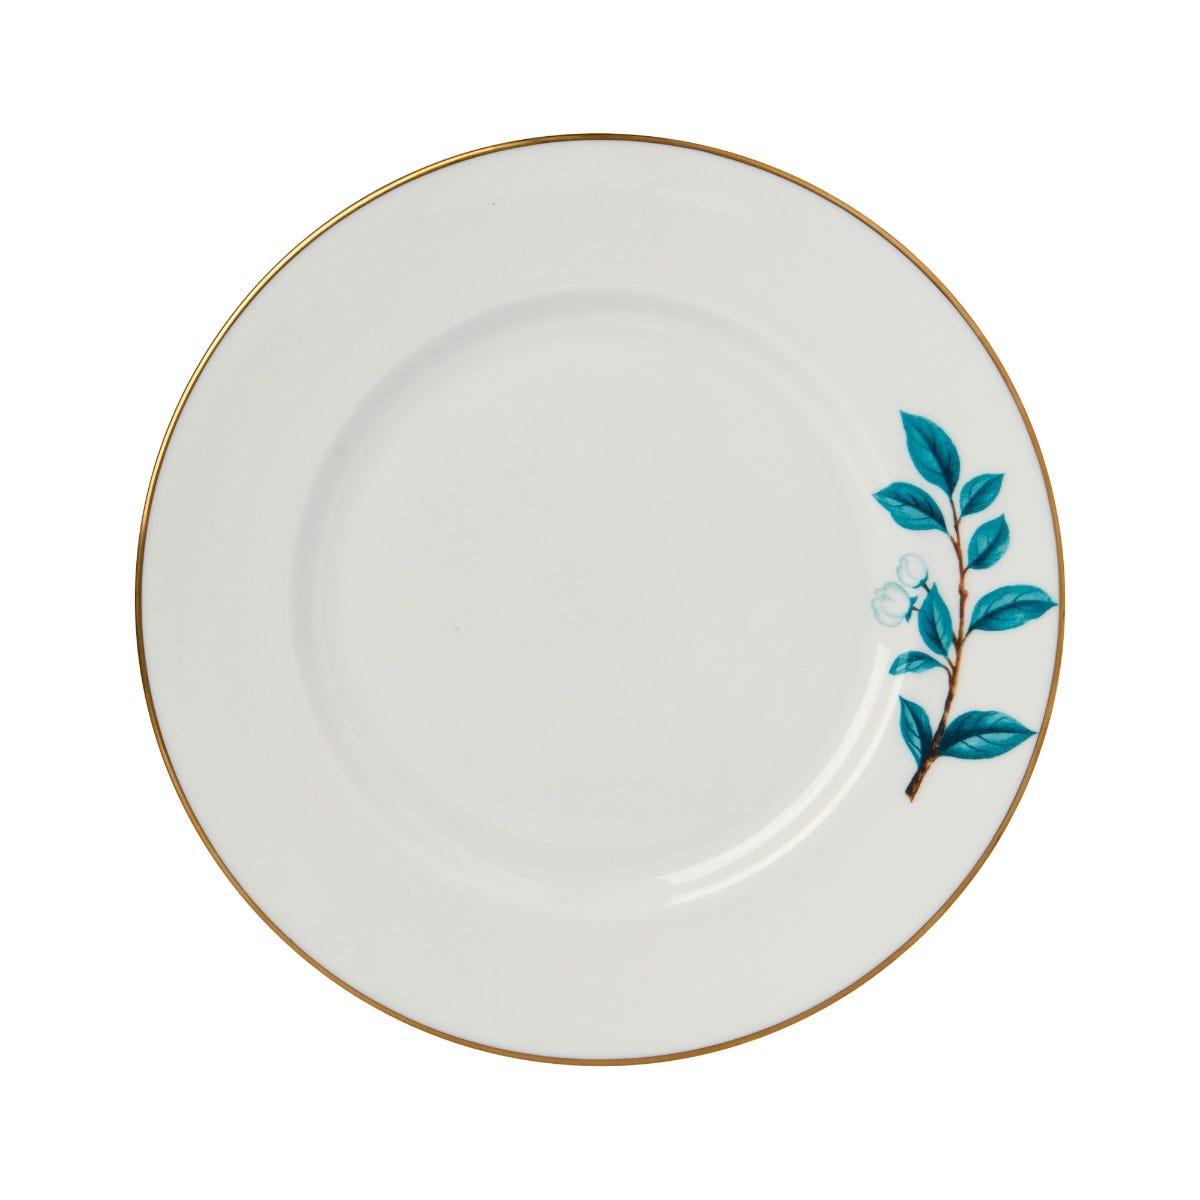 Camellia Plate in White, Small, Fortnum & Mason